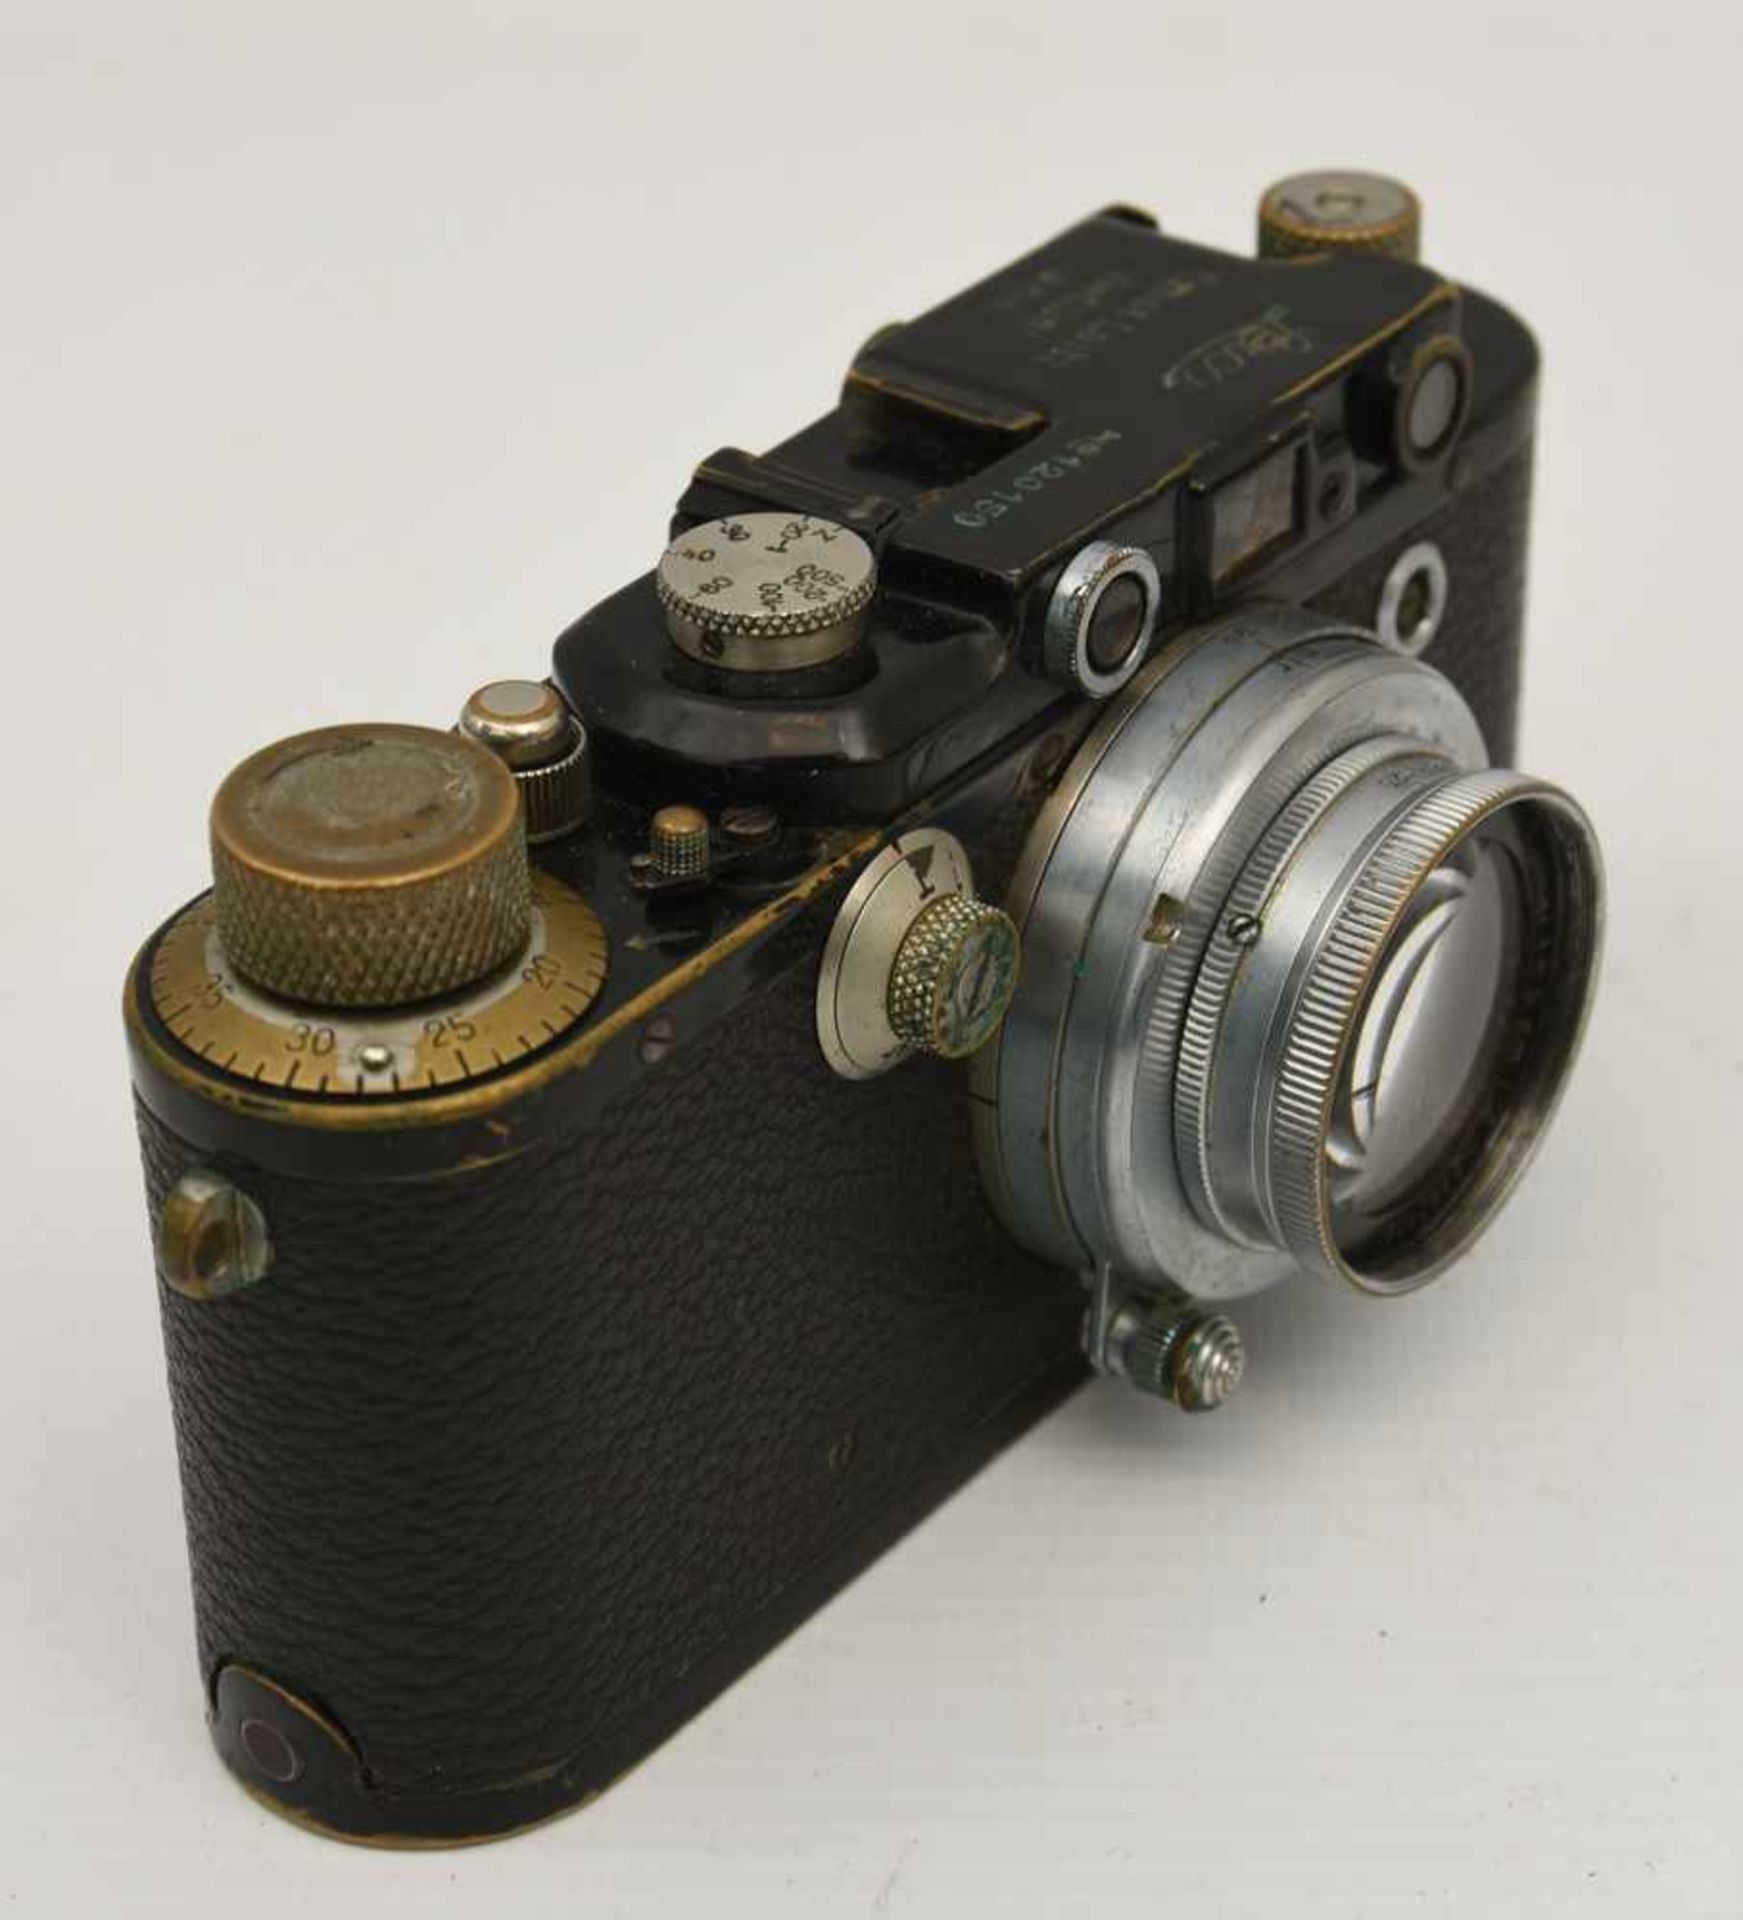 LEICA KAMERA, Deutsches Reich um 1935 Kamera der Firma Leica "Ernst Leitz Wetzlar D.R,.P." Alters- - Bild 4 aus 9